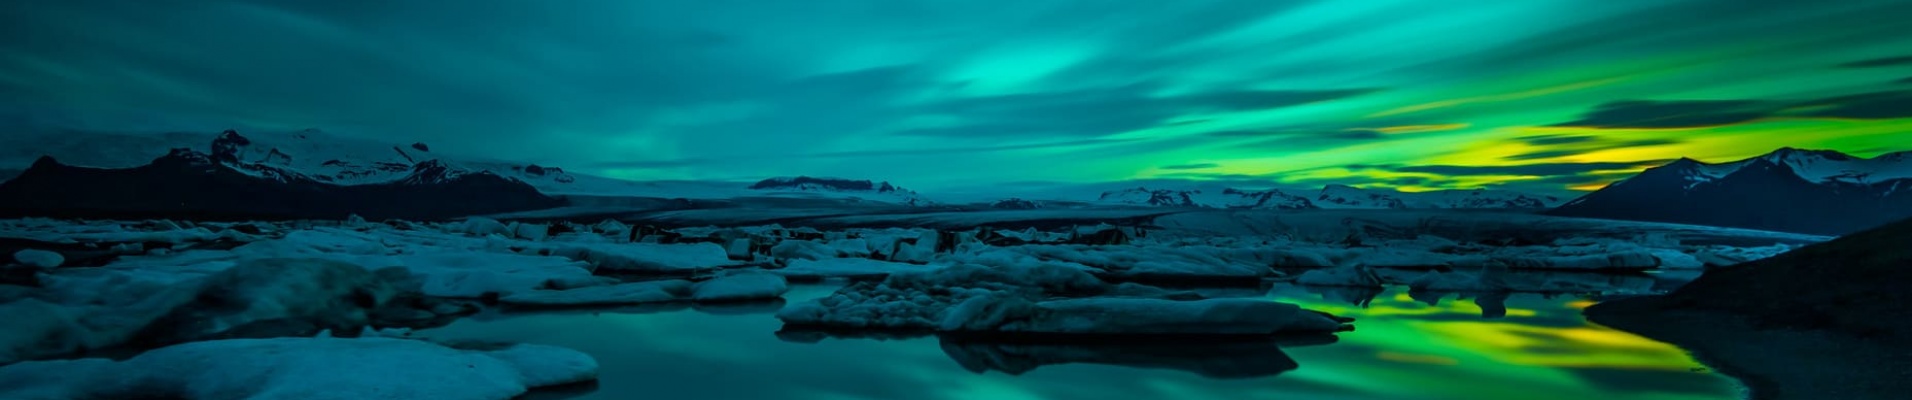 aurore-boréale Islande